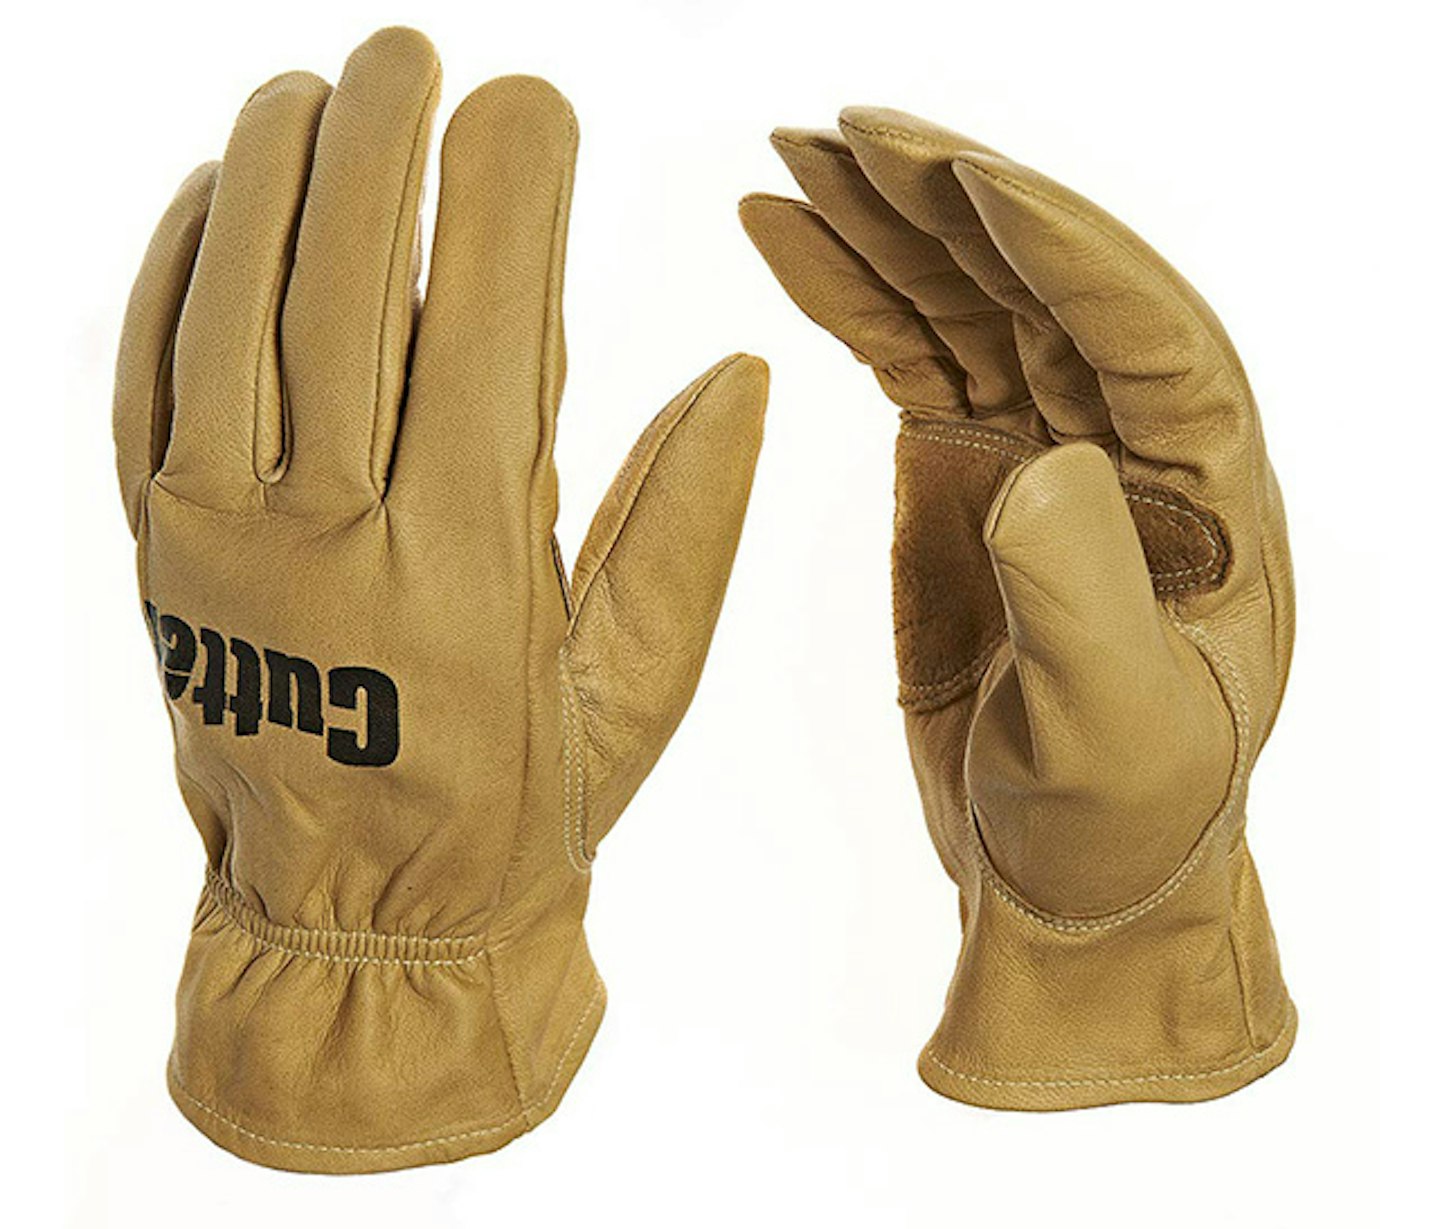 Cutter Original Work glove